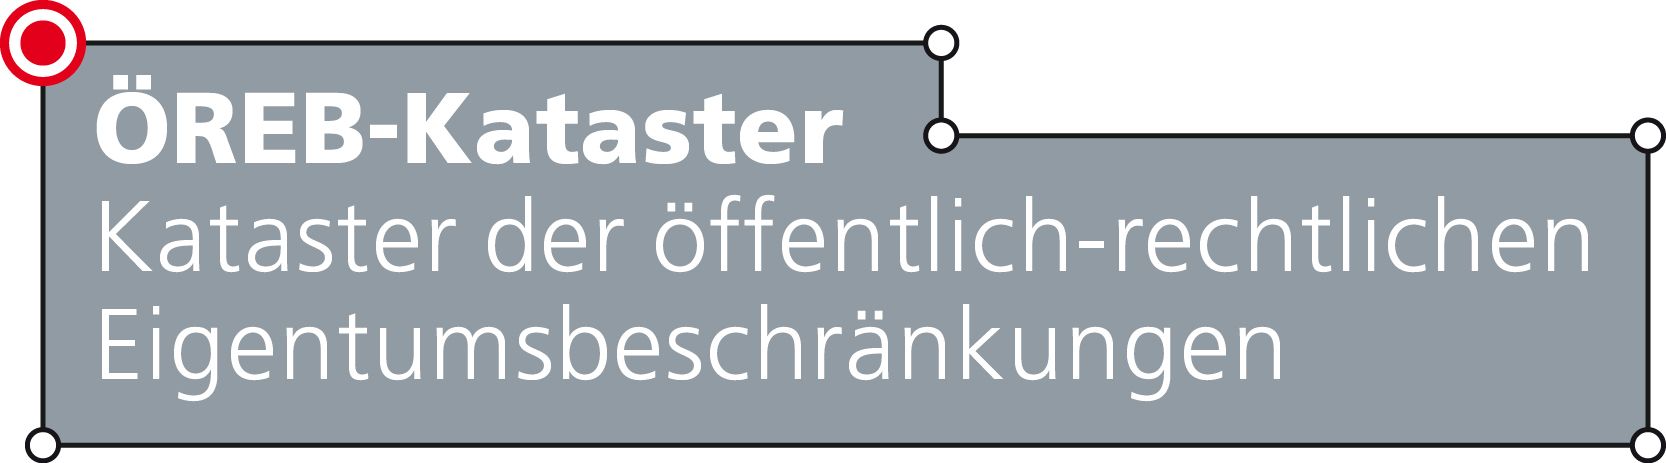 Logo des ÖREB-Katasters